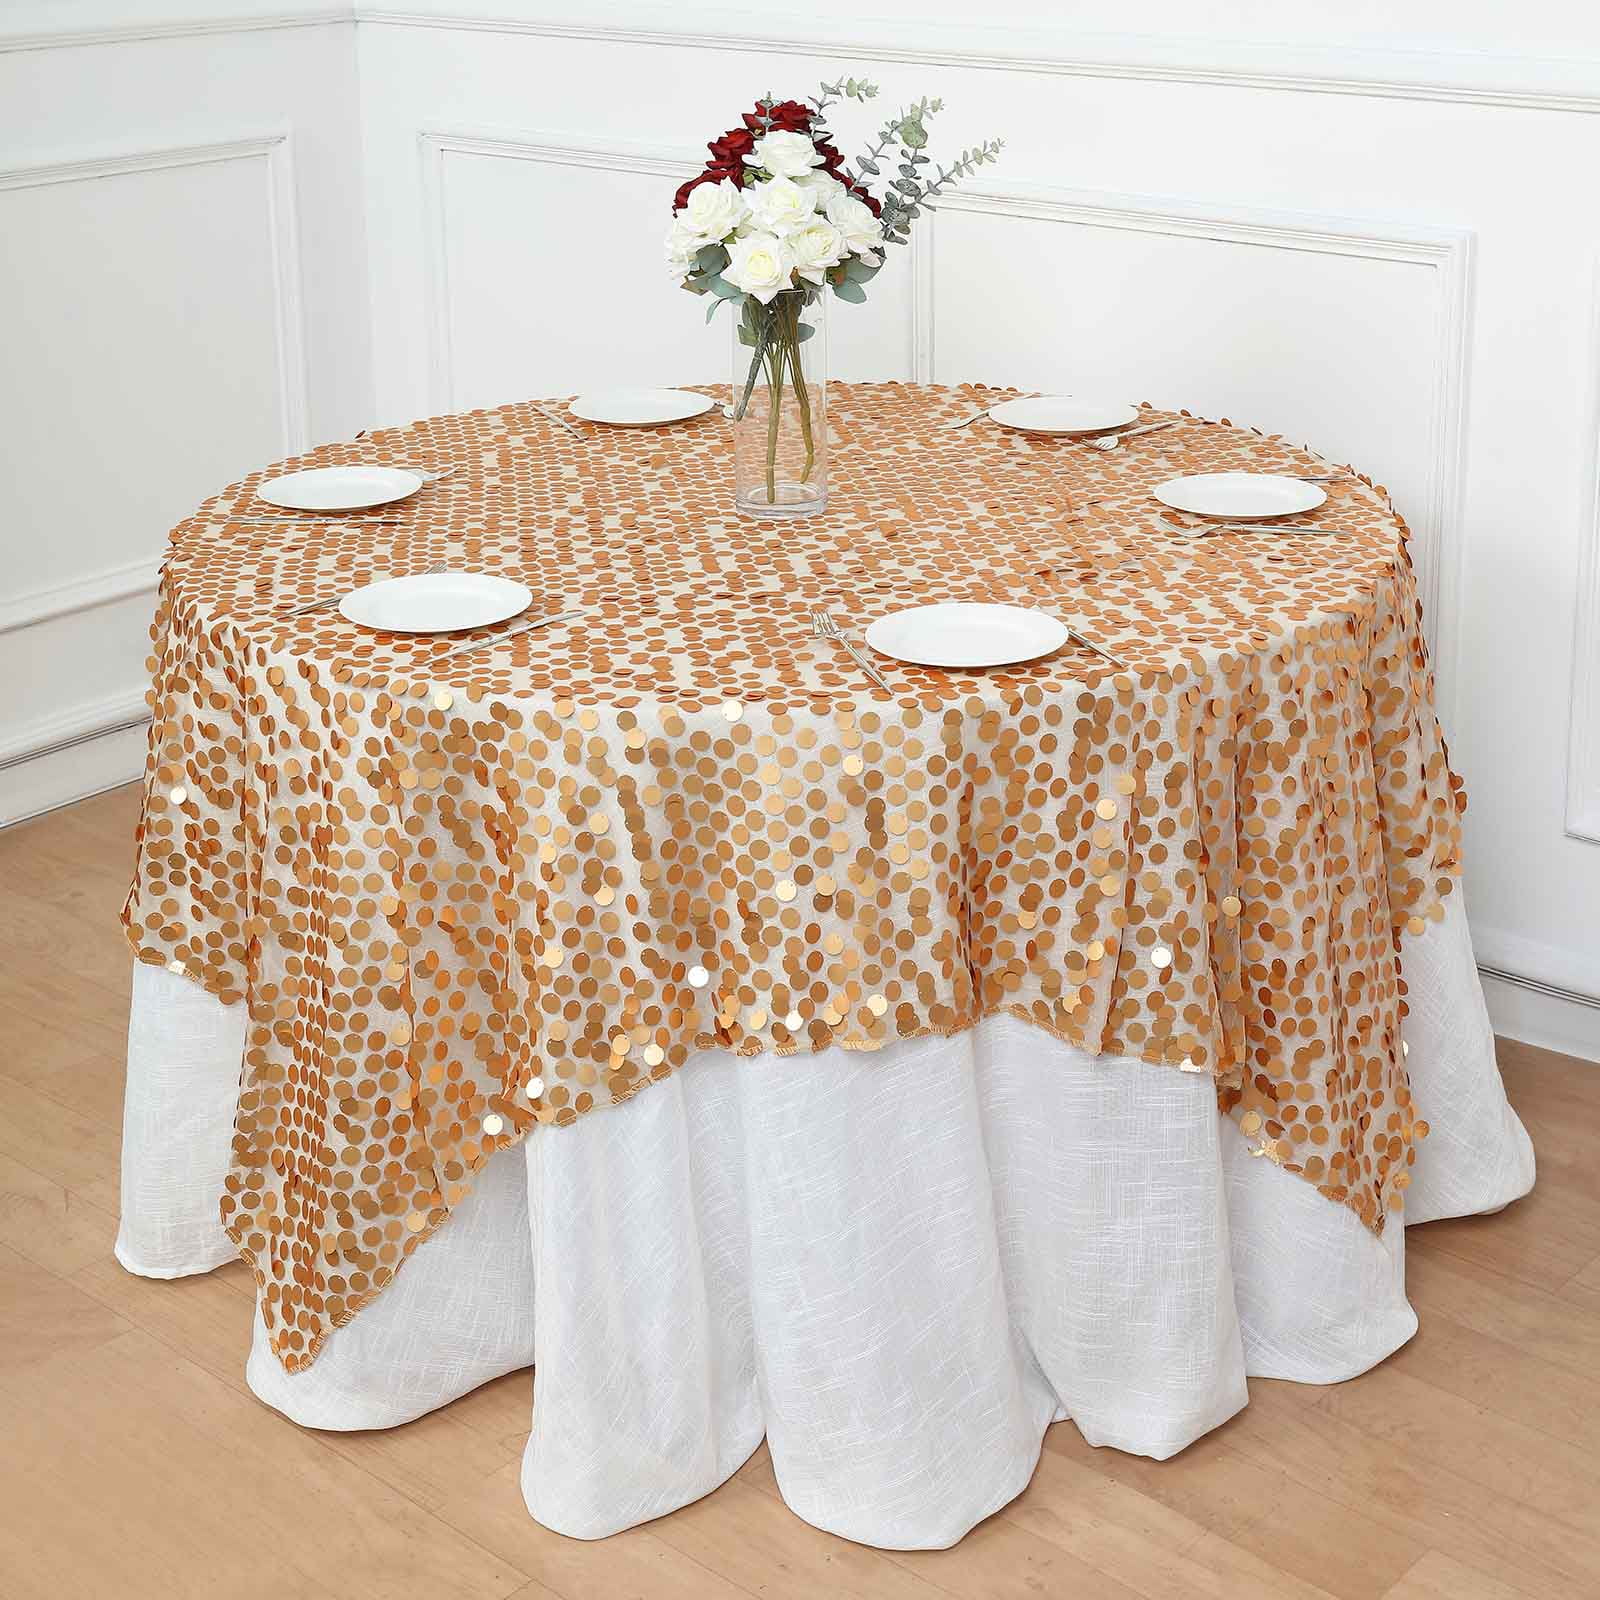 Confettis de table ronds roses et dorés pailletés 42 g - Vegaooparty